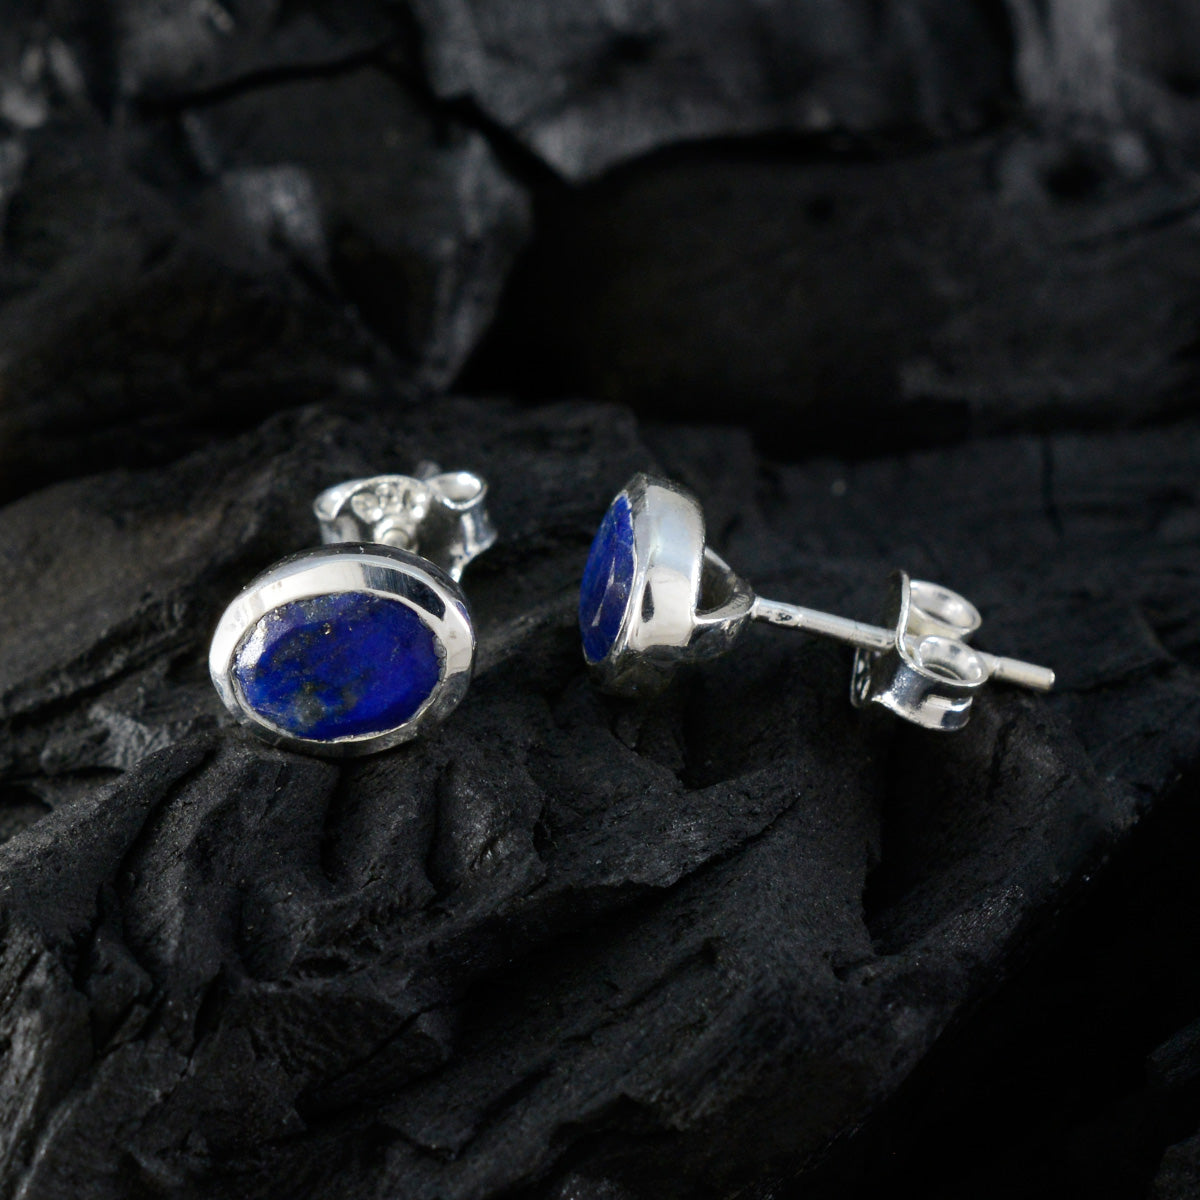 Riyo bonny 925 boucle d'oreille en argent sterling pour femmes lapis lazuli boucle d'oreille réglage de la lunette boucle d'oreille bleue boucle d'oreille